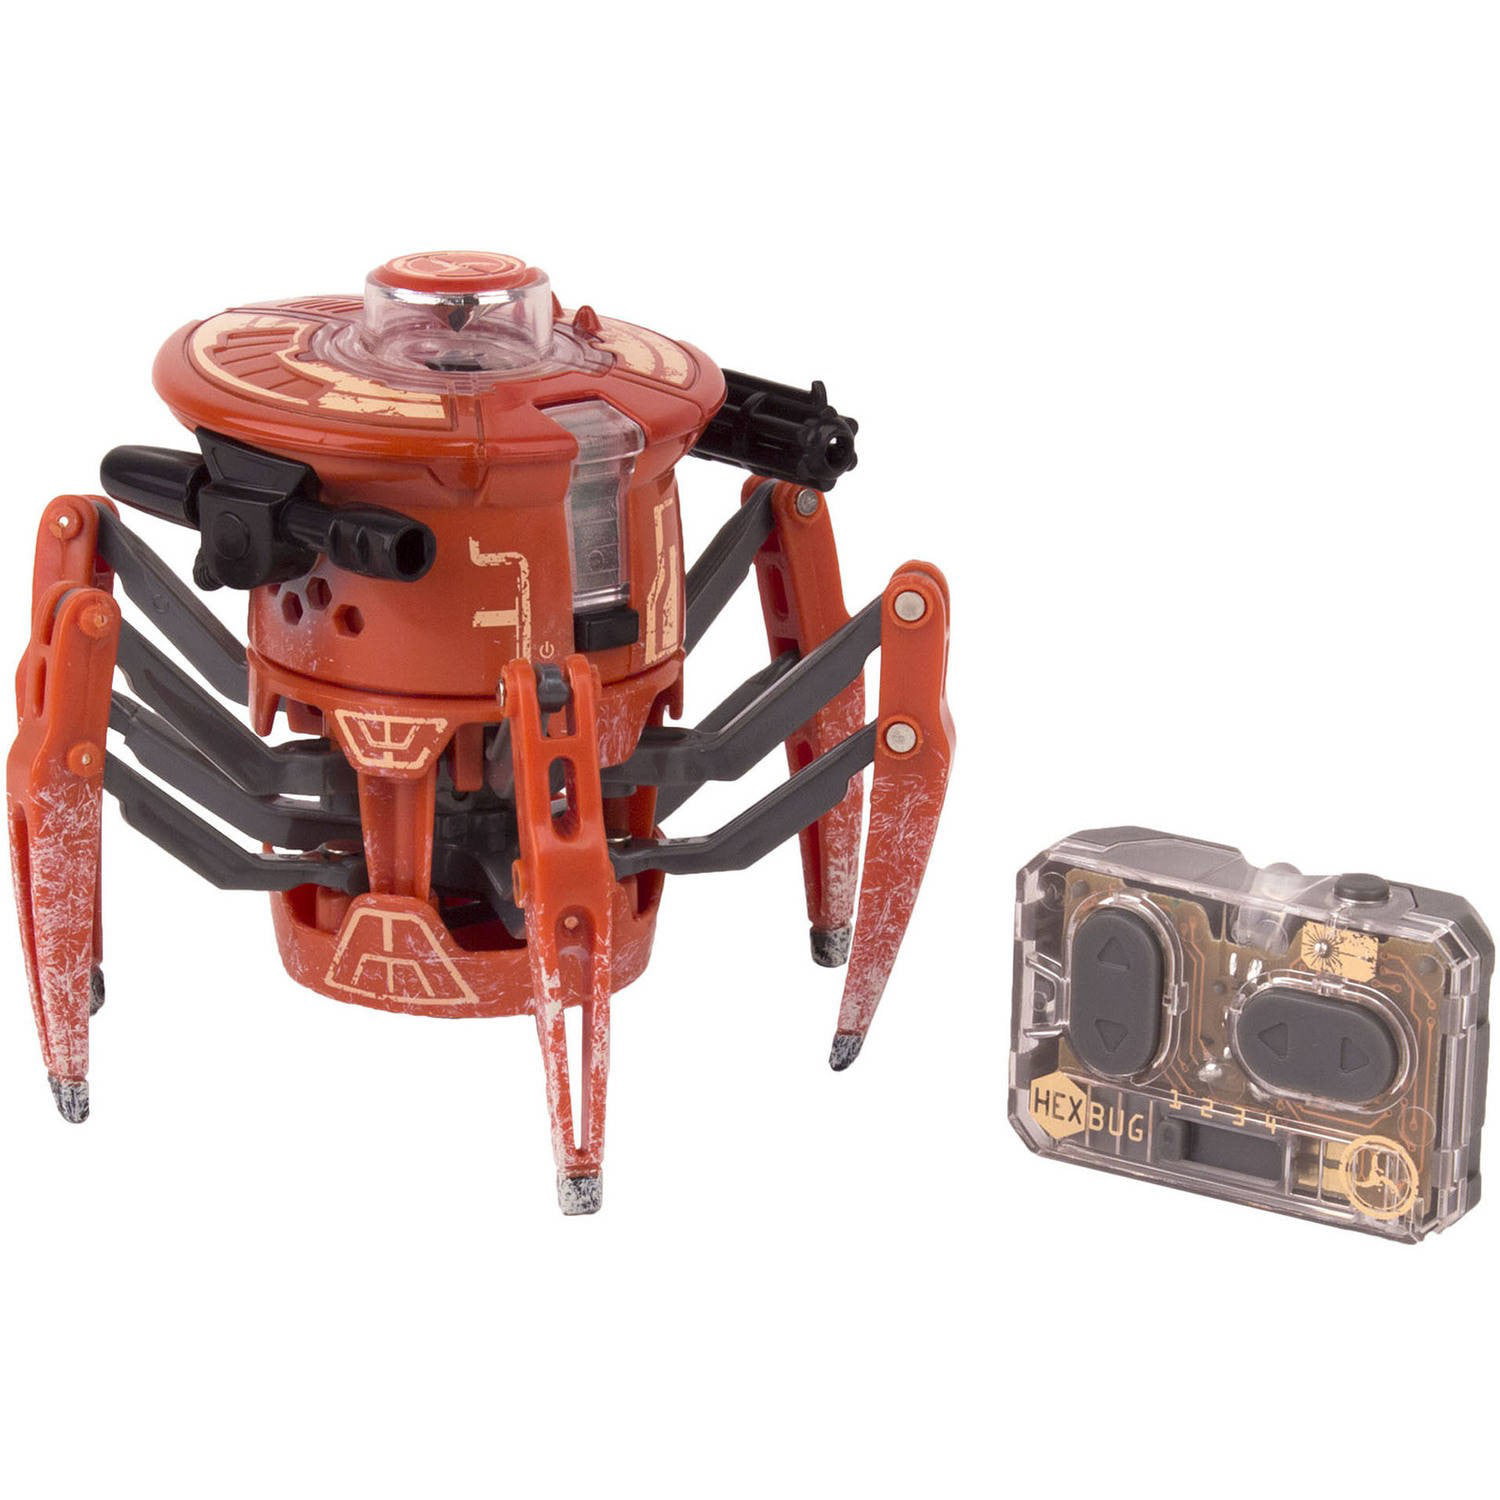 Hexbug Robotic Spider Figure for sale online 